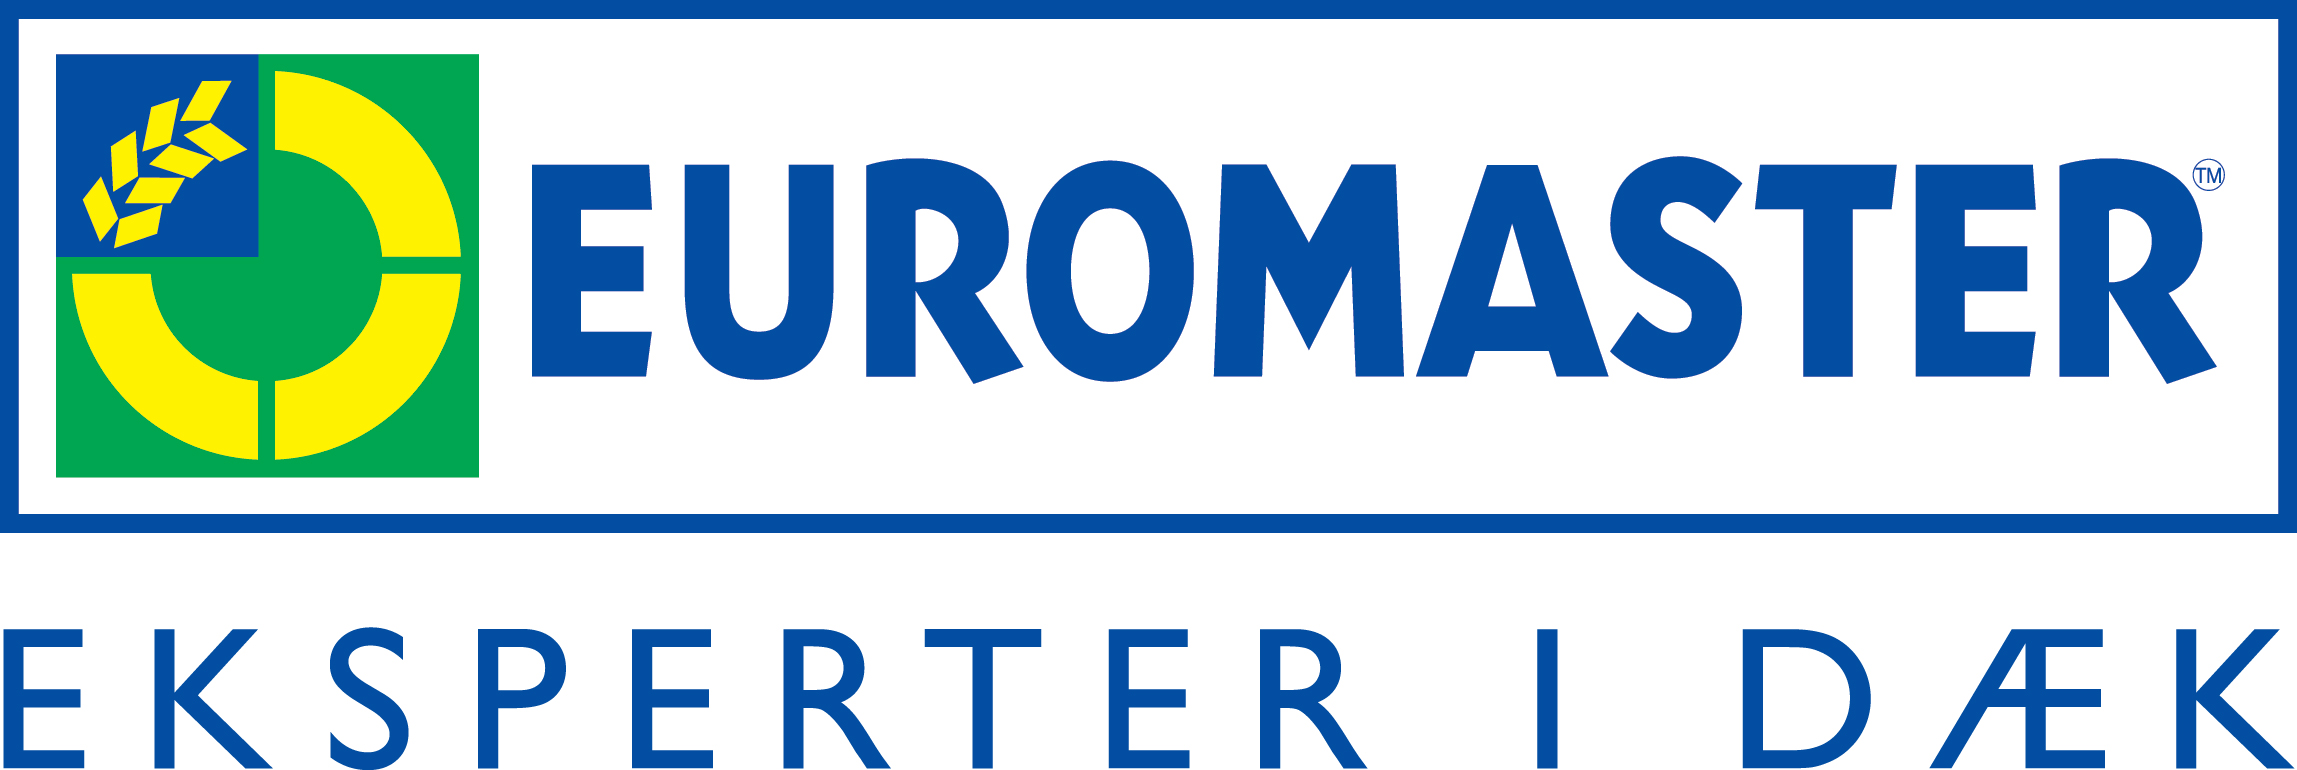 Euromaster Roskilde gammel logo